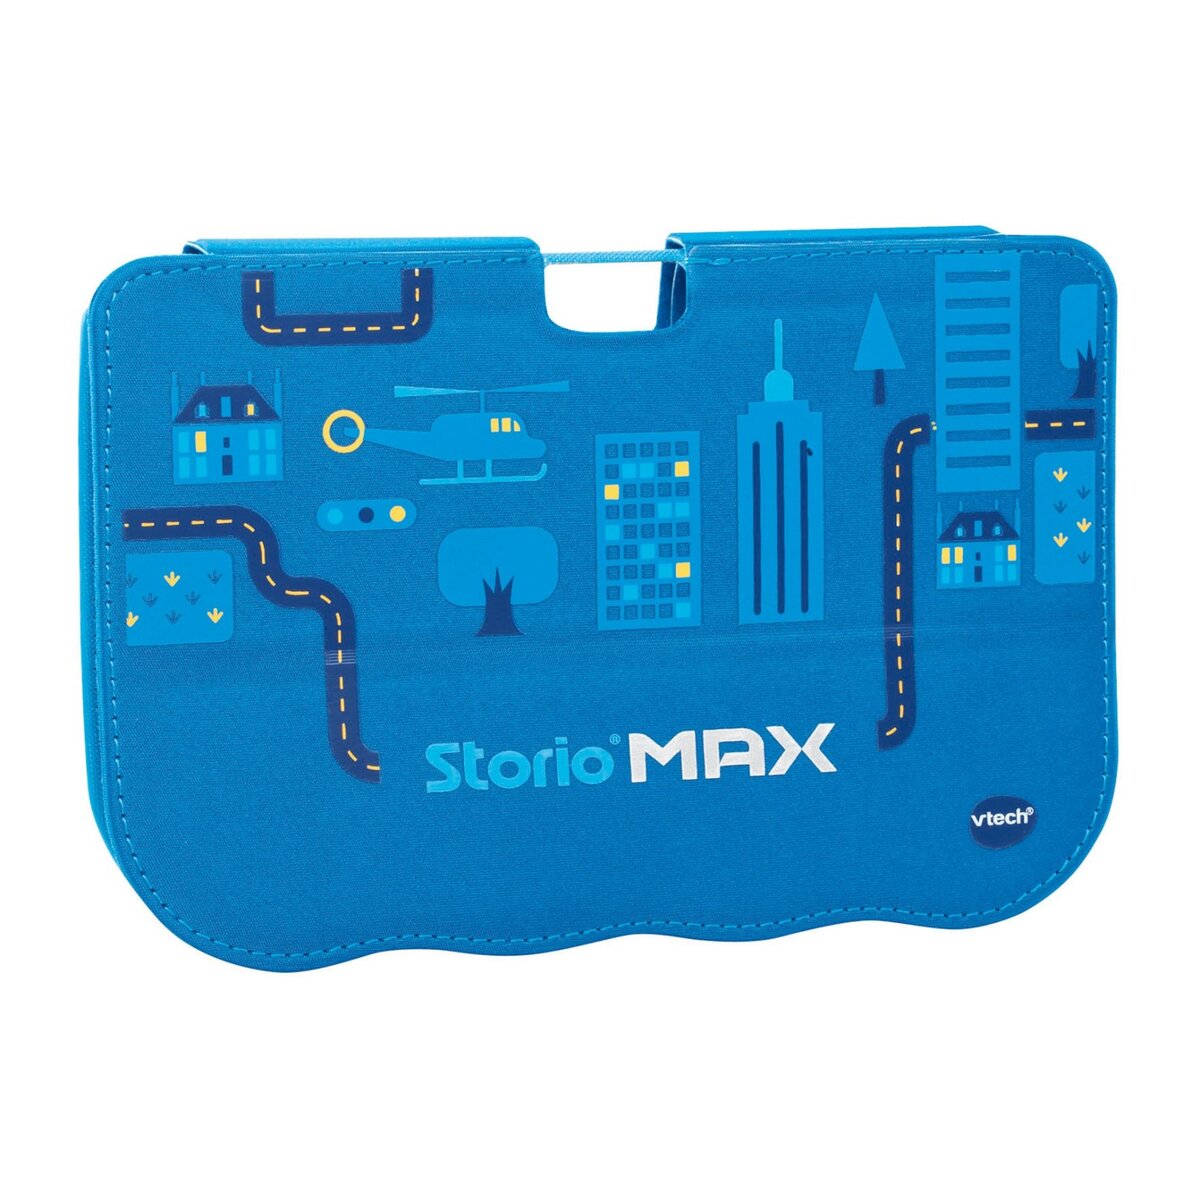 Storio tablette max XL 2.0 VTech - Bleu - Jeux Interactifs - Jeux